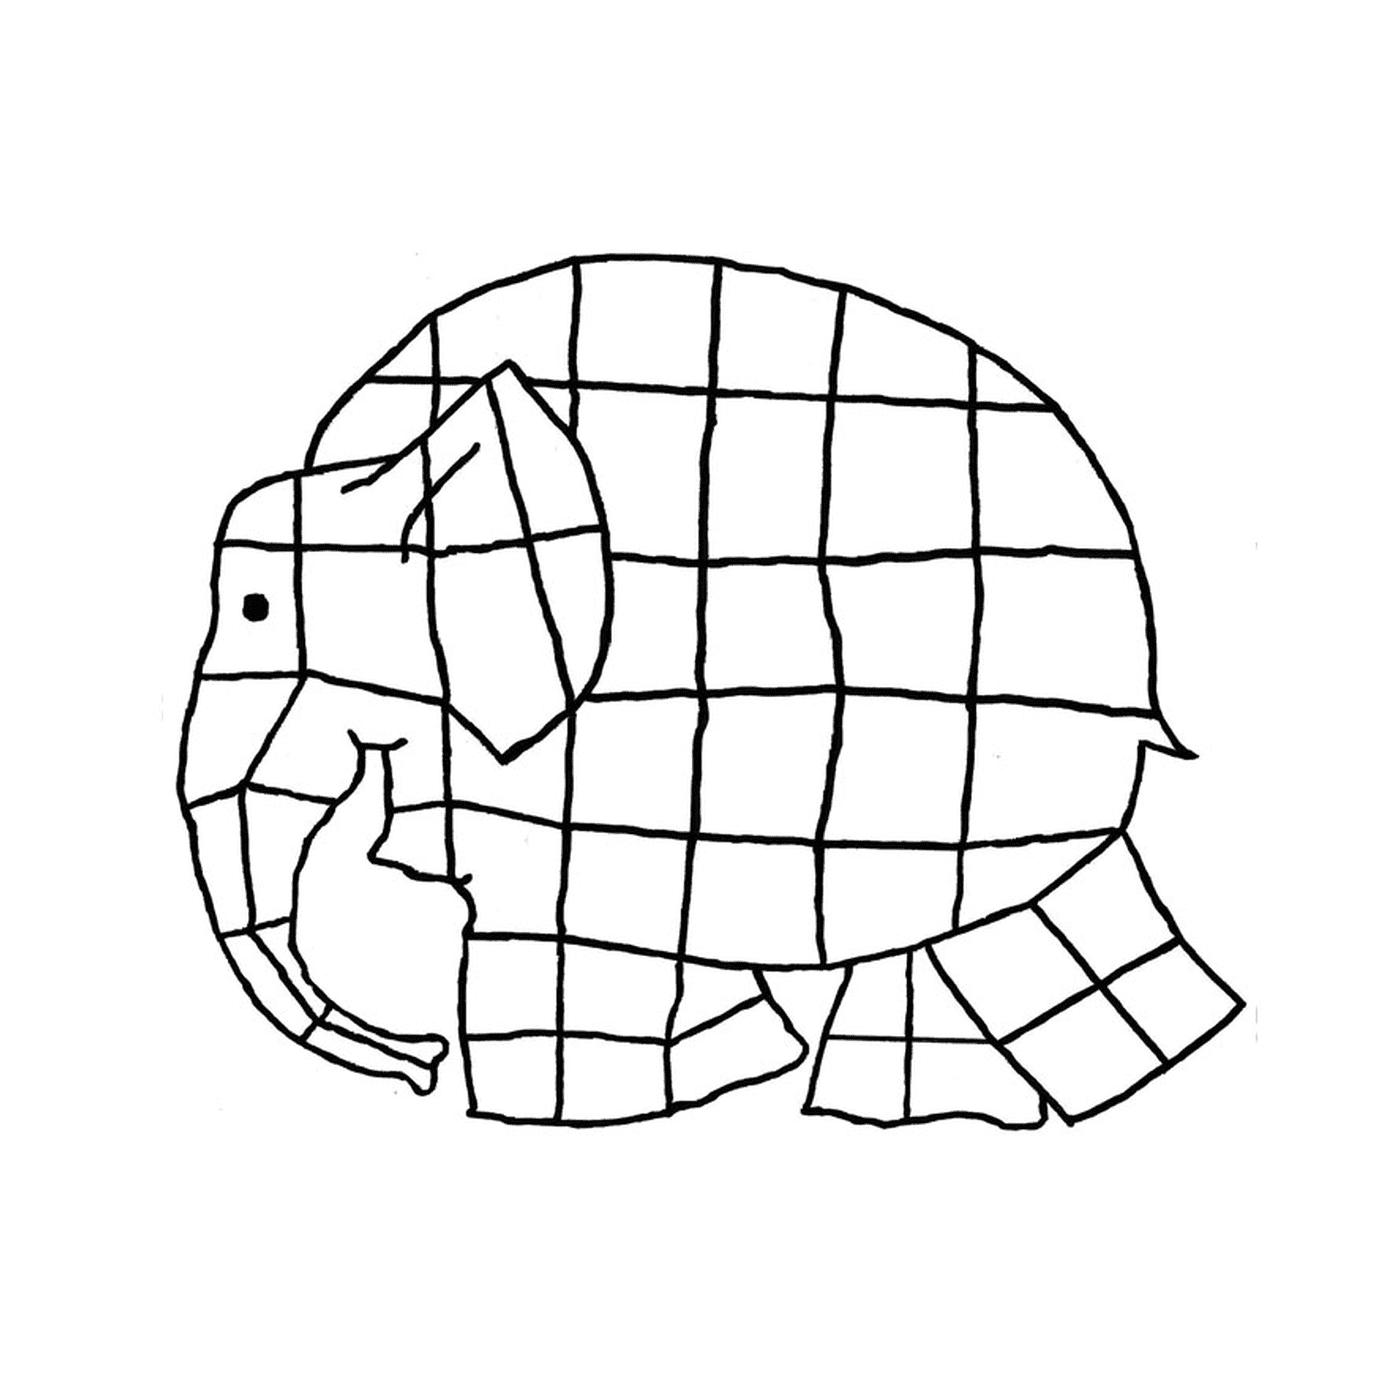  Ein Elefant aus Quadraten 